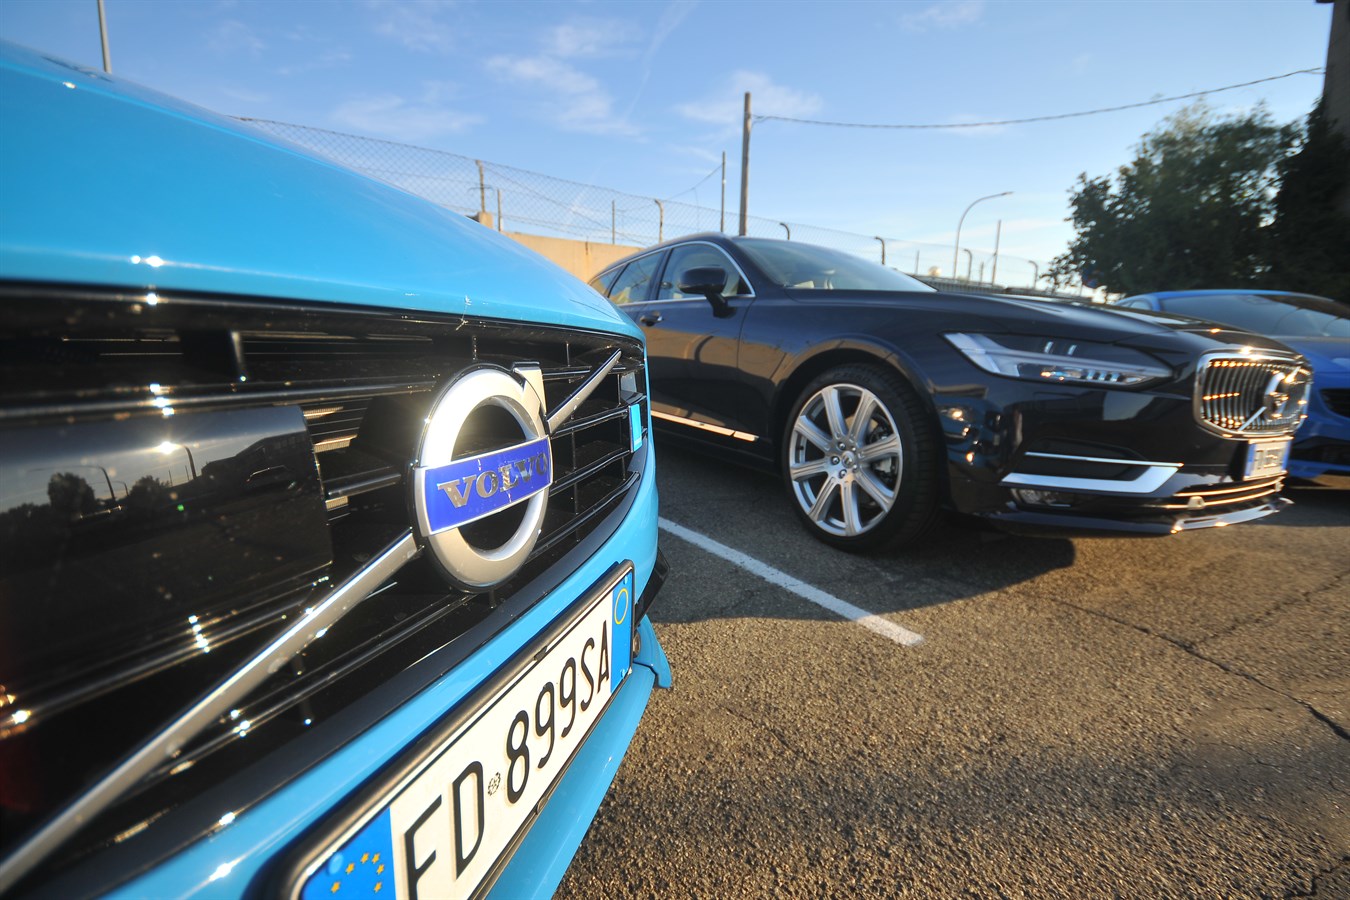 Registro Volvo d'Epoca - Raduno Annuale 2016